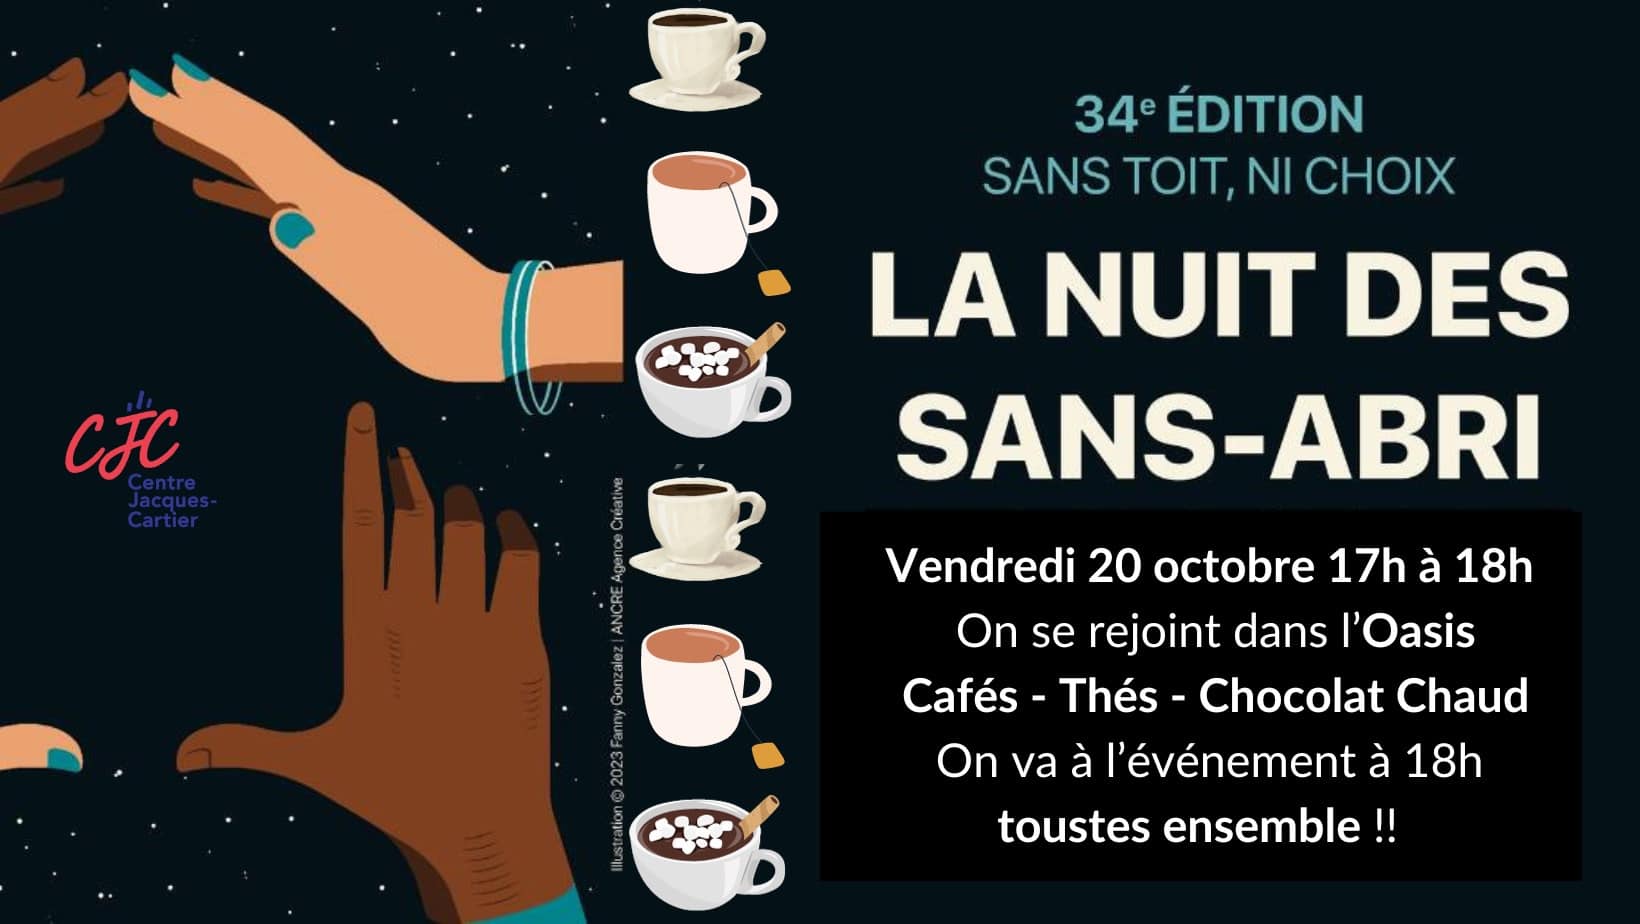 Affiche pour l'événement "Boisson chaude Nuit des Sans-Abri". Des symboles de tasses et des mains